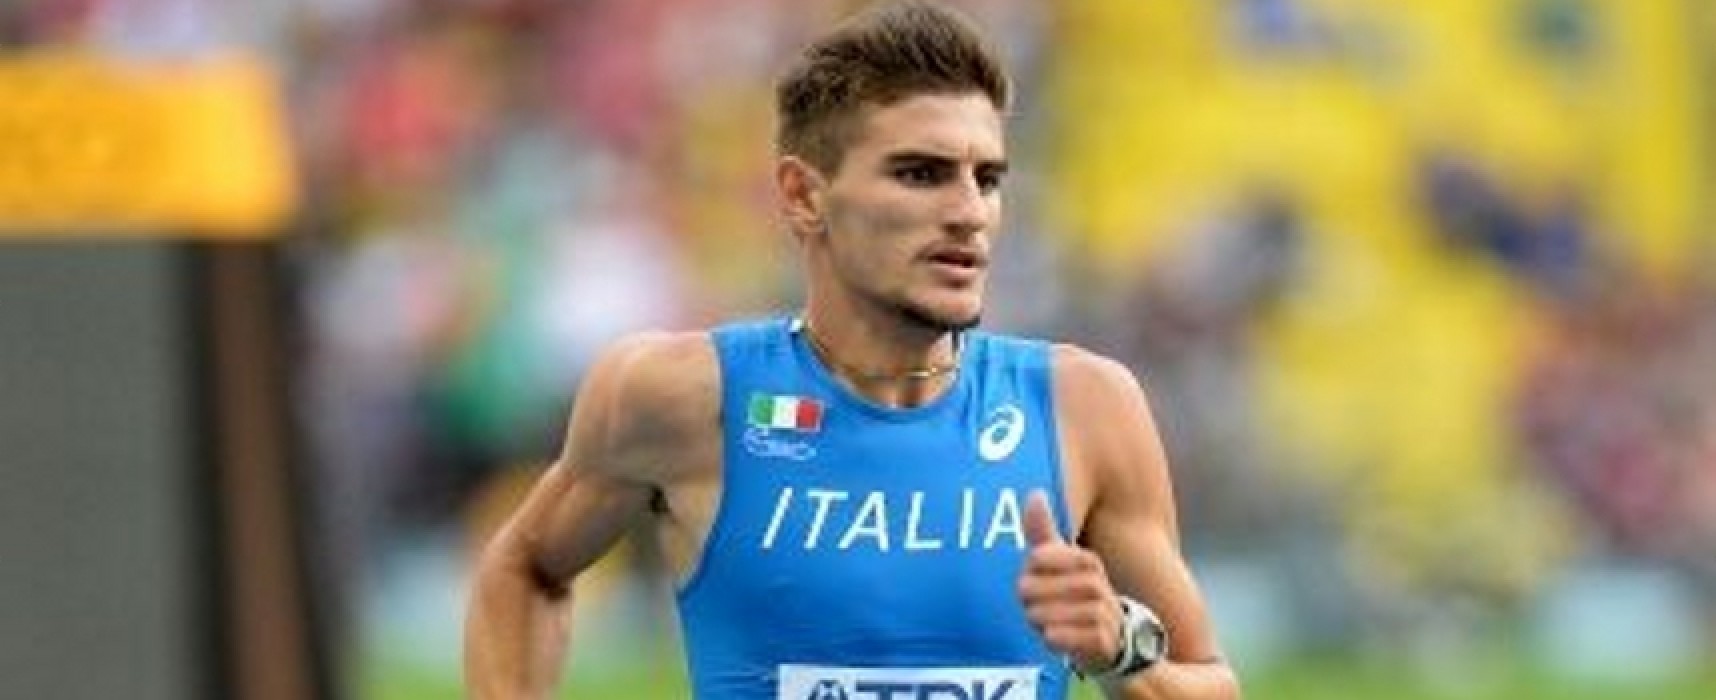 Atletica leggera, Haliti tra i convocati dell’Italia per le Universiadi